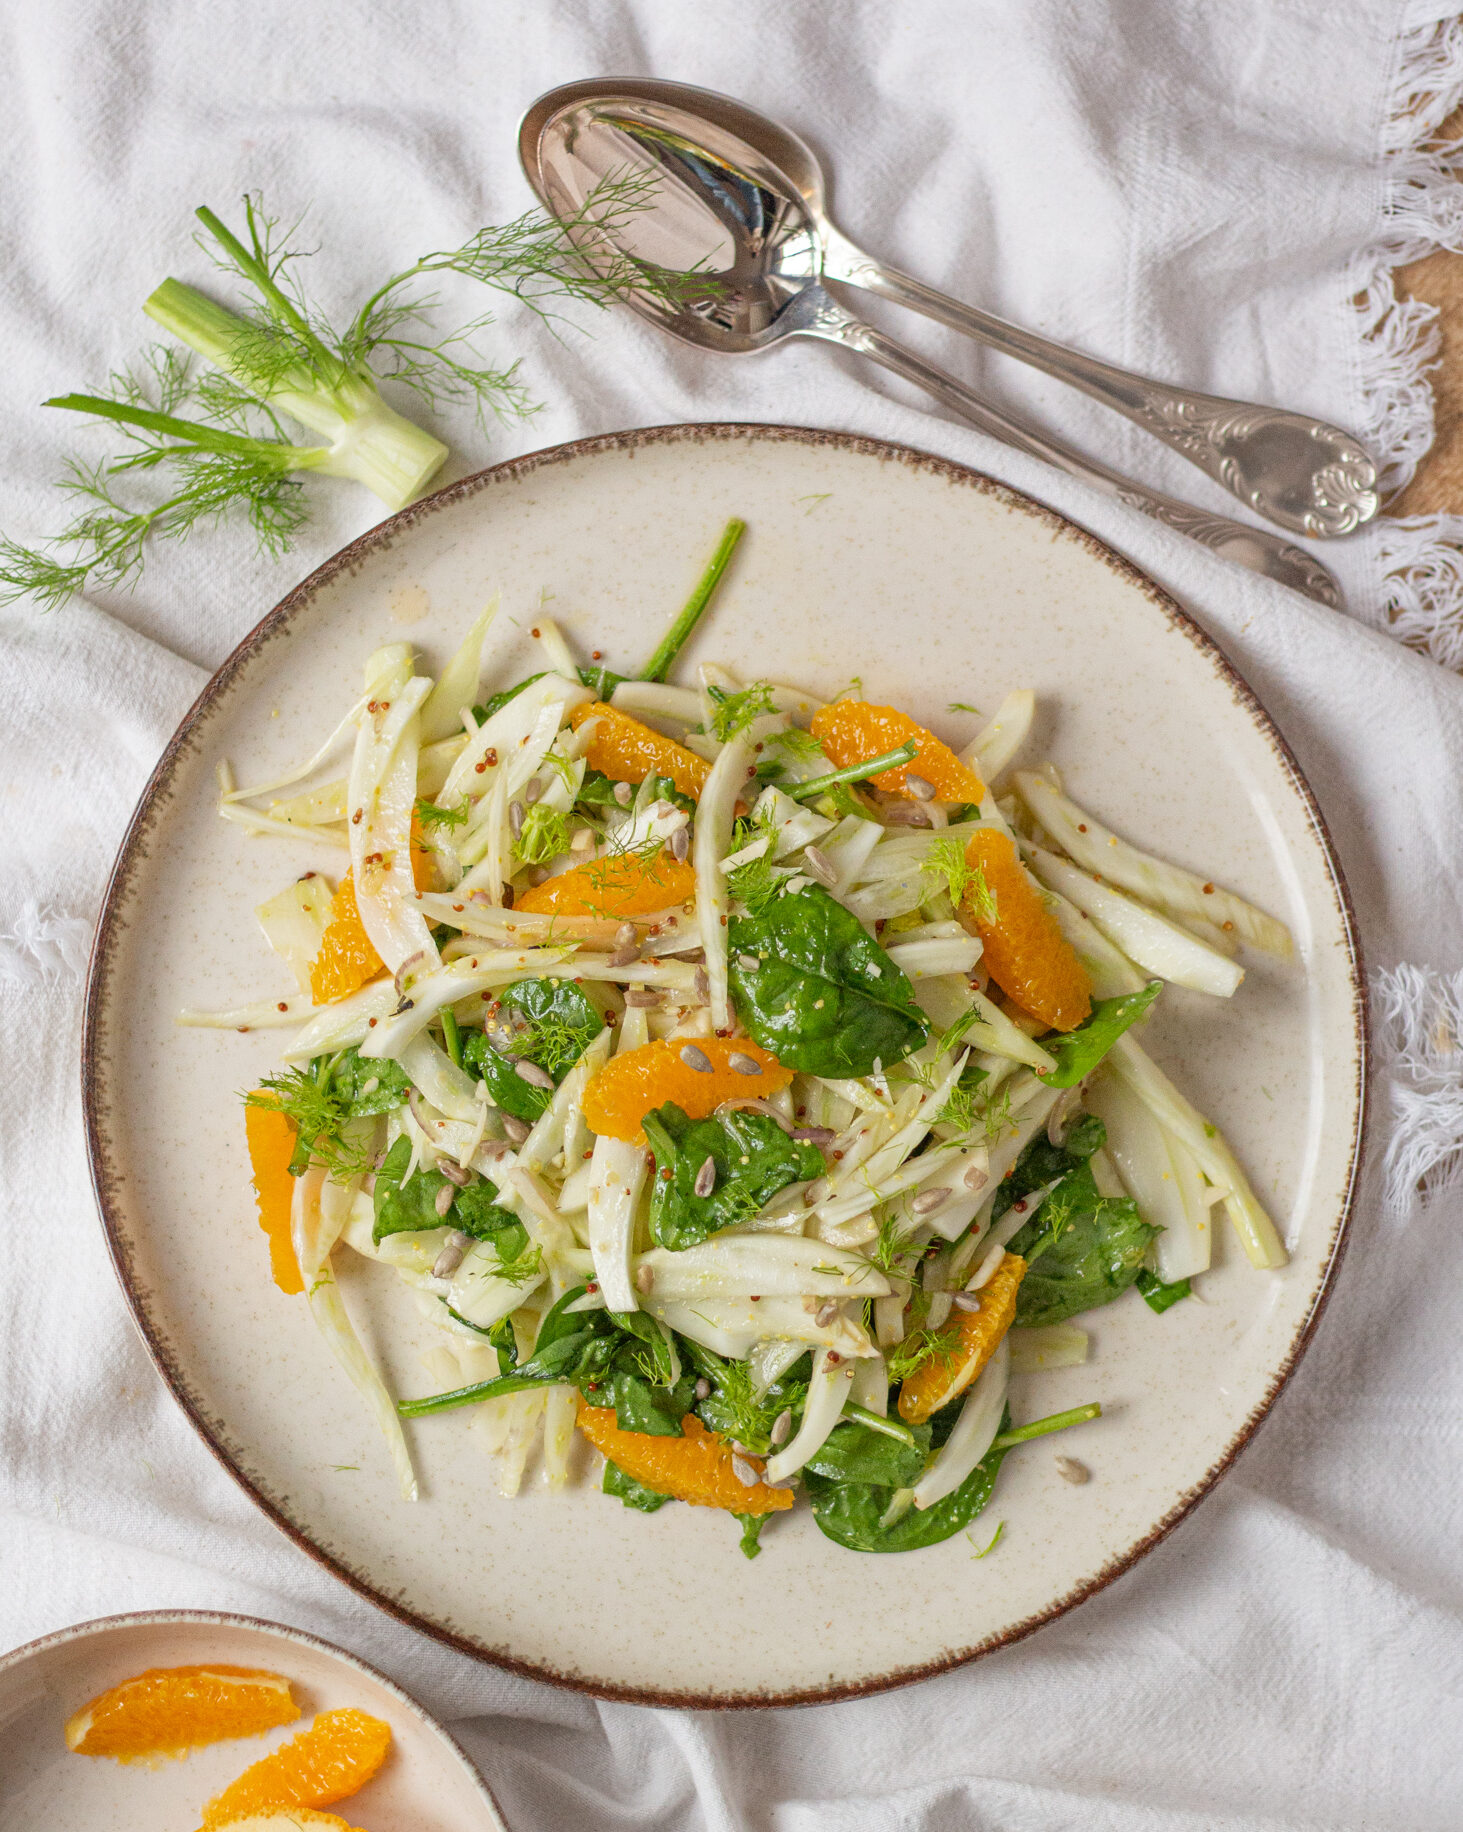 Салат с фенхелем и апельсином – отличная альтернатива зеленому салату. Этот элегантный и наполненный витаминами салат готовится за 10 минут.